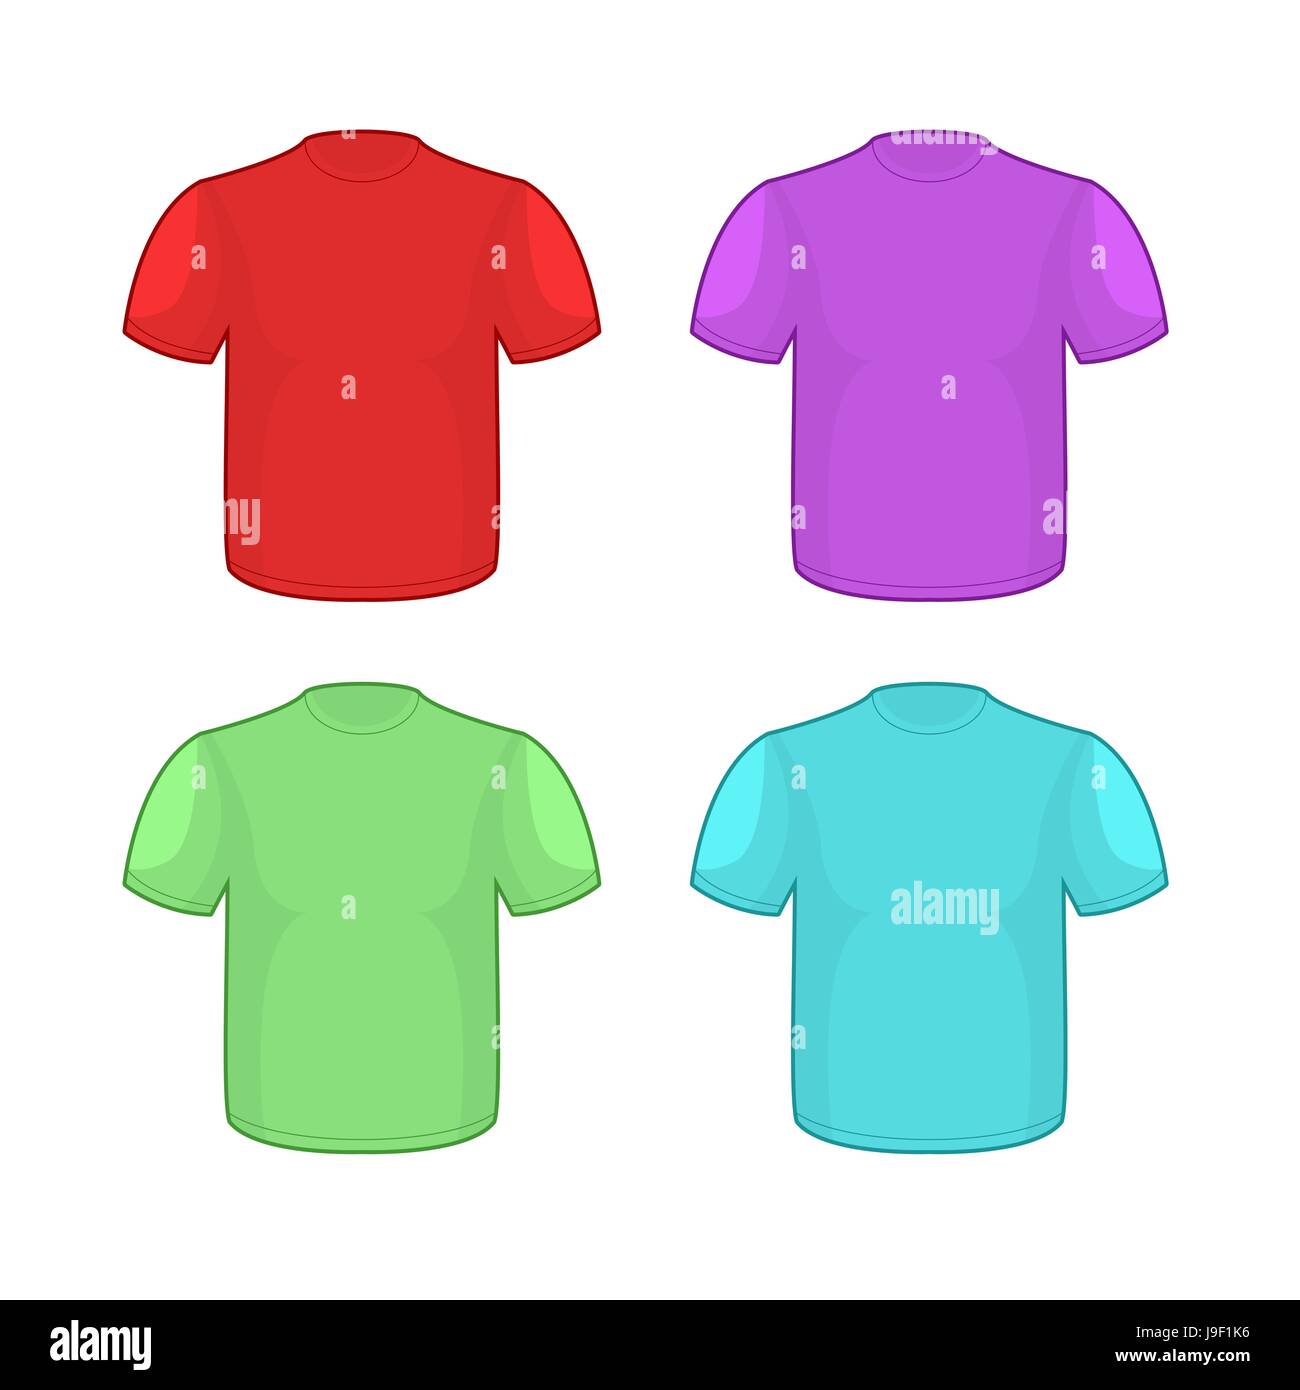 Diseños PNG de marcos para camiseta para camisetas & Merch